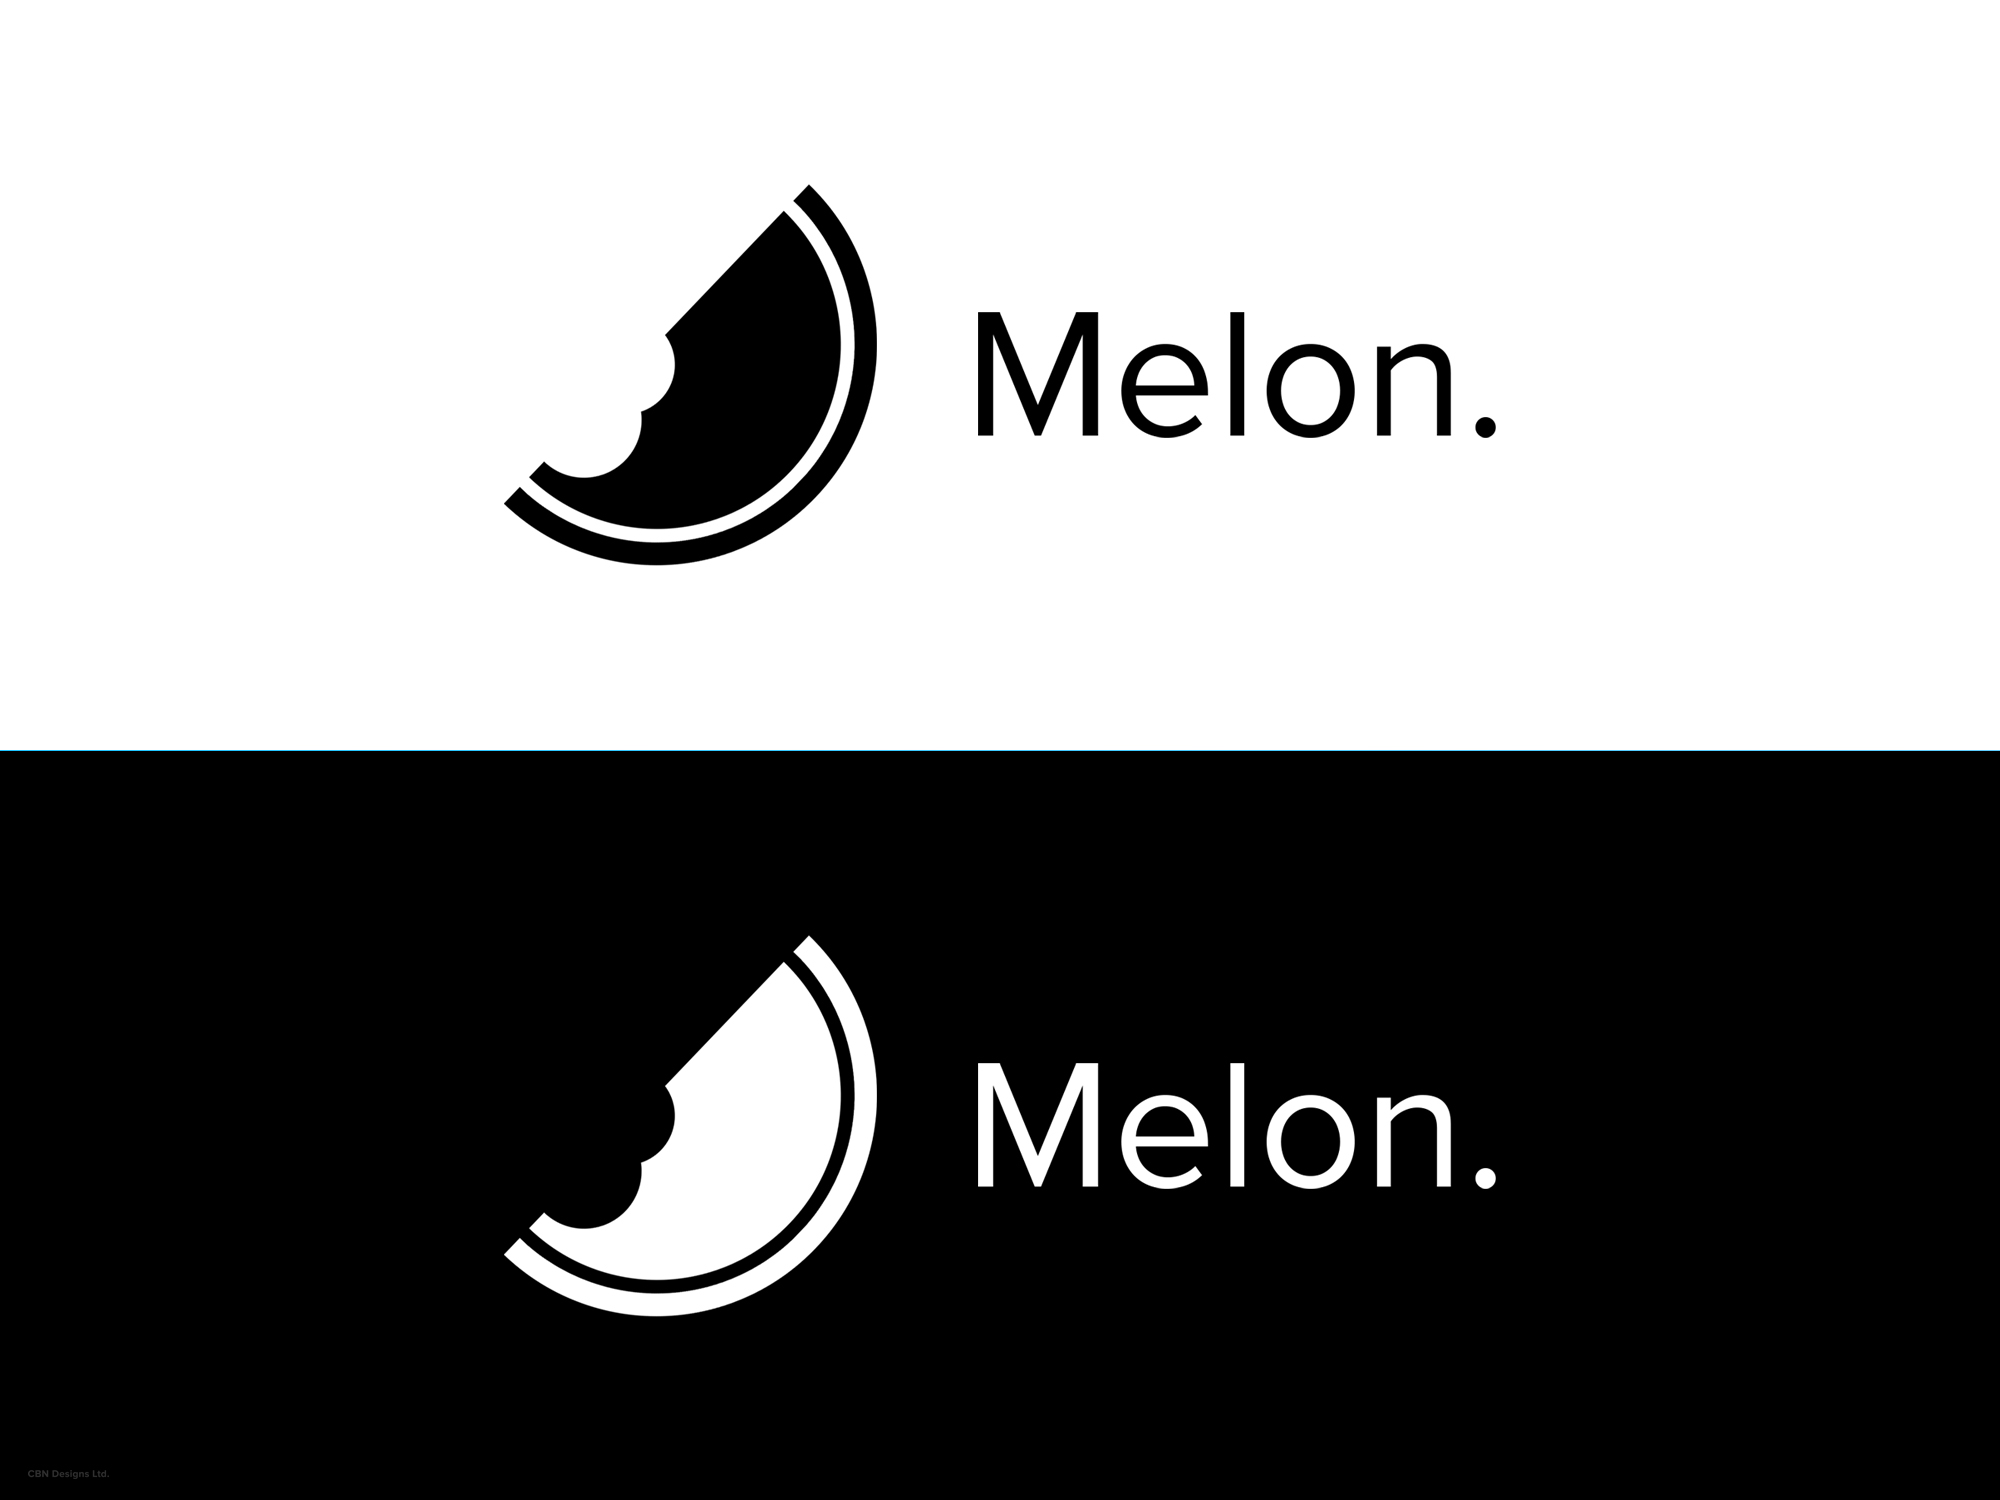 194-cbn-logo---melon-black-and-white-16029325706977.jpg